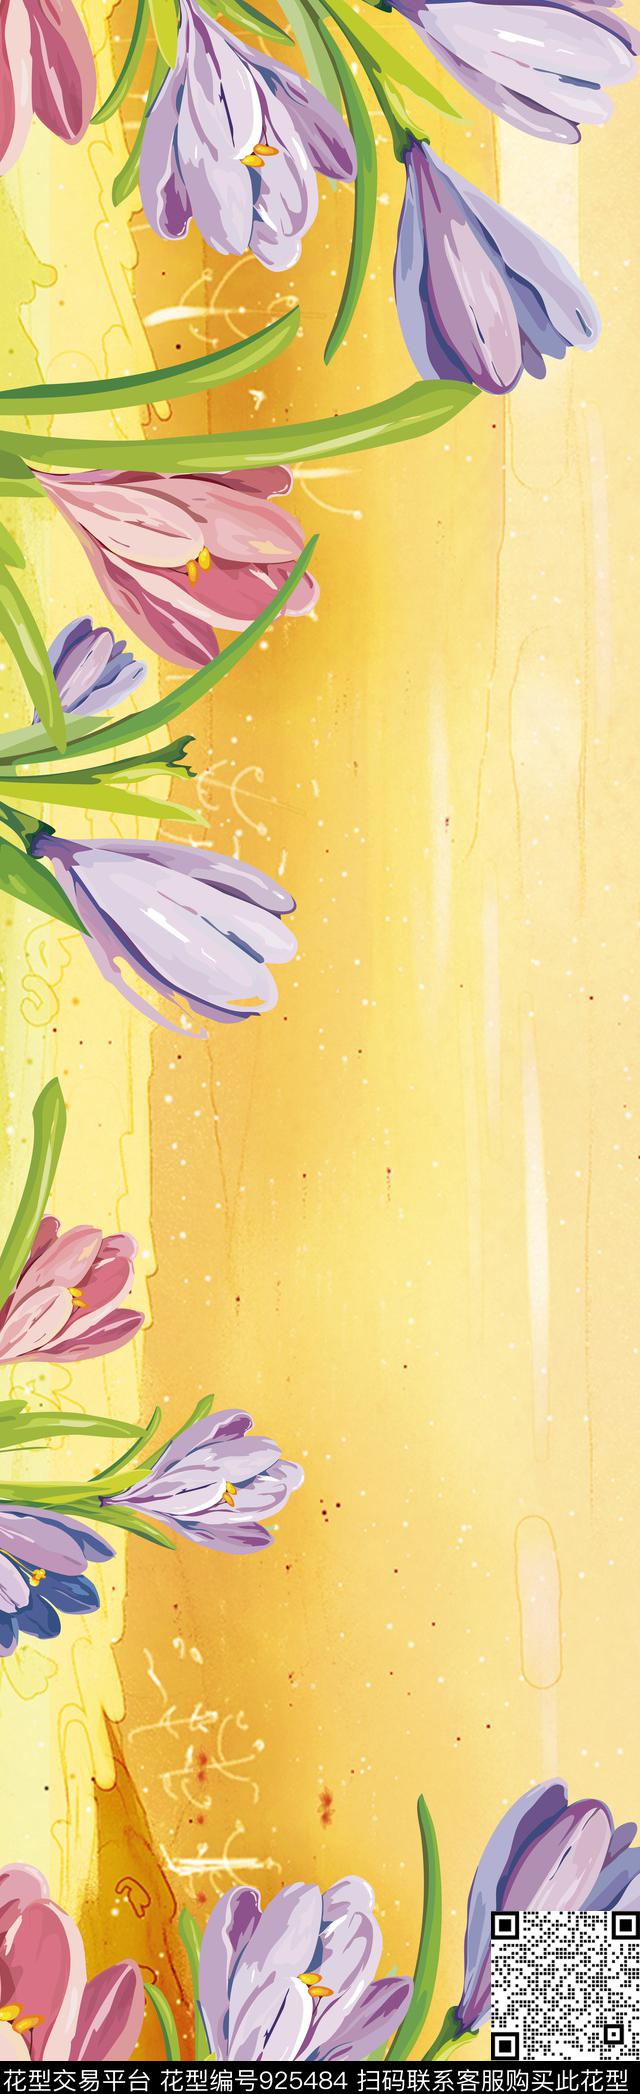 1.jpg - 925484 - 花卉 长巾 风景景观 - 传统印花花型 － 长巾花型设计 － 瓦栏